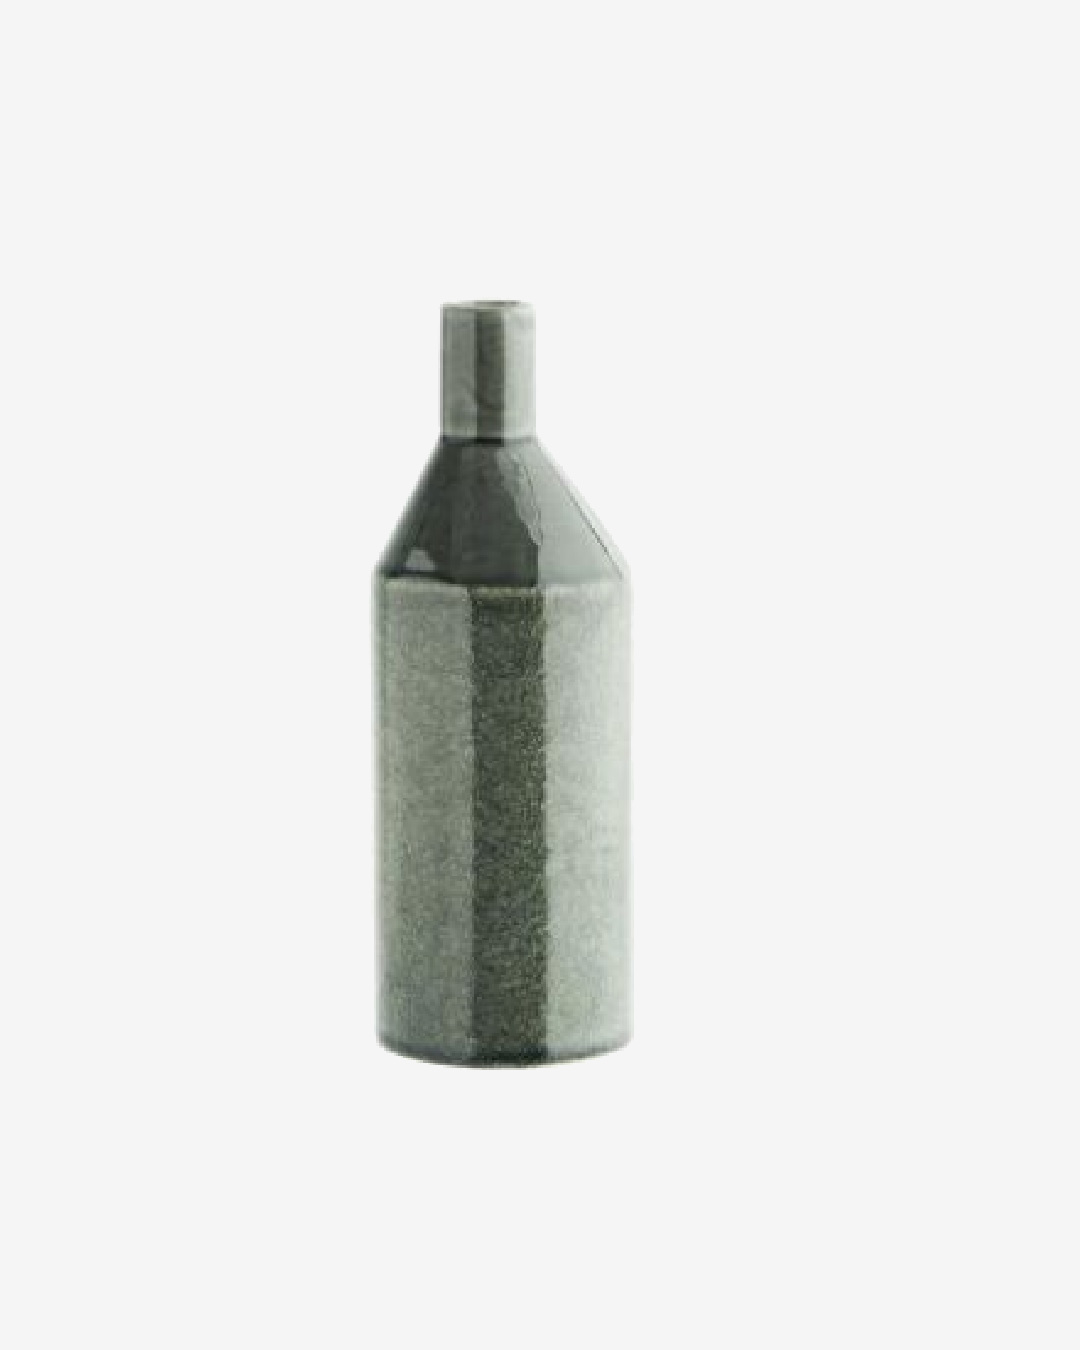 Green bottle stone vase